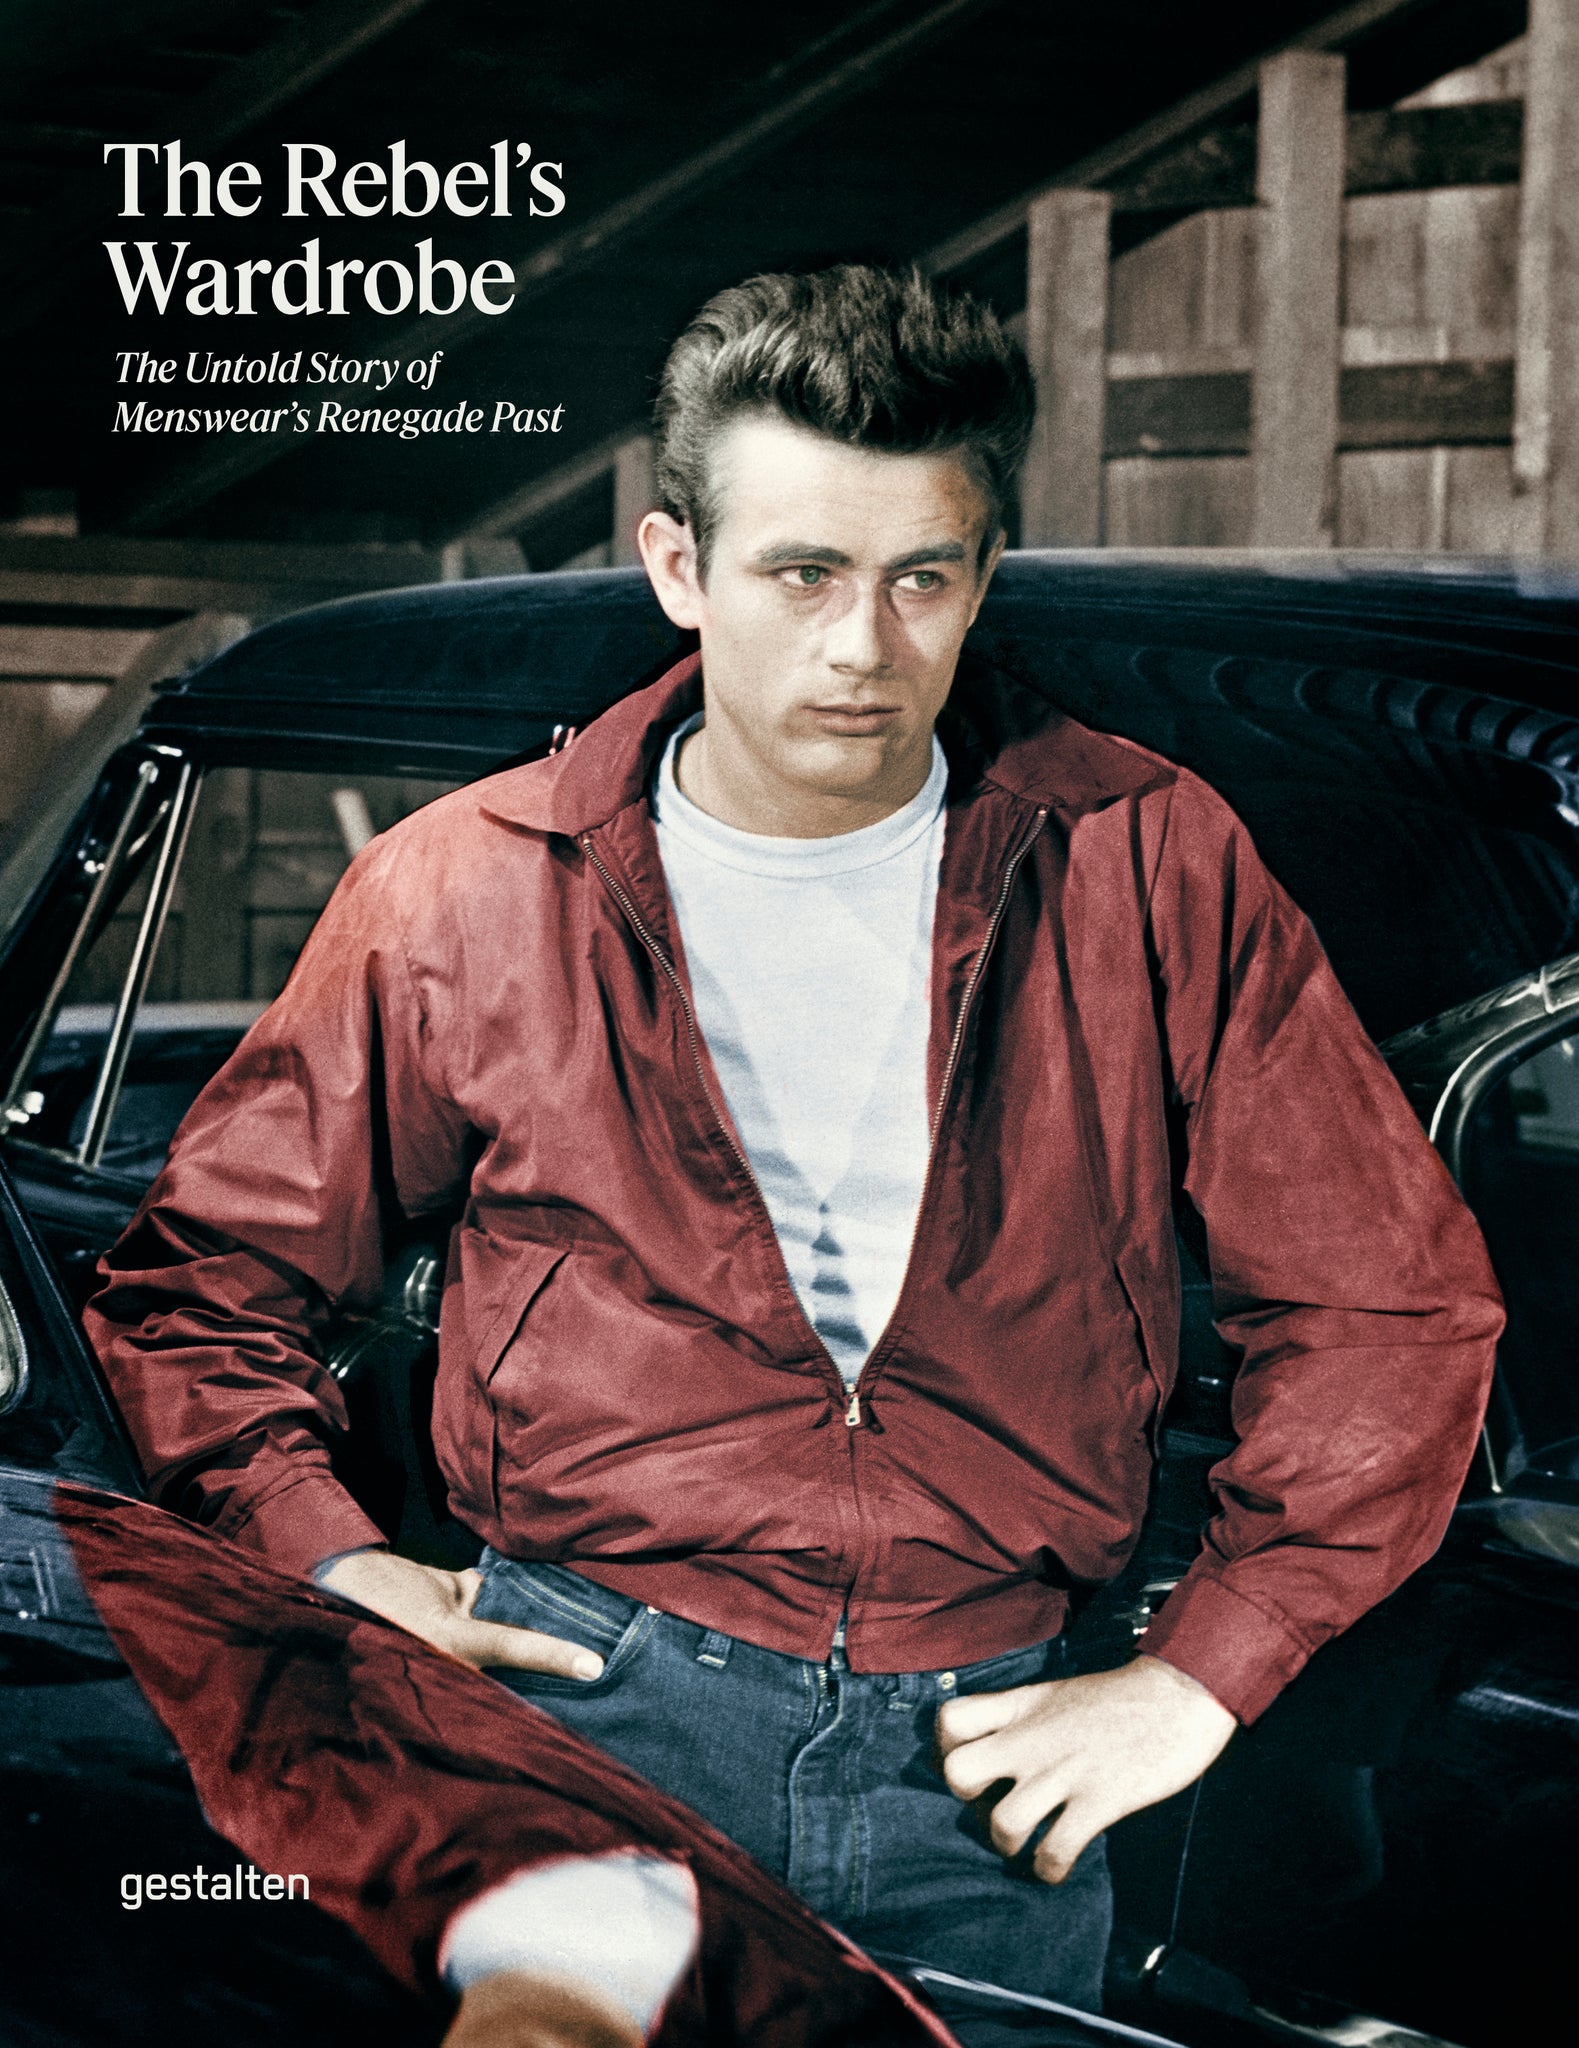 Rebel's Wardrobe, the cover